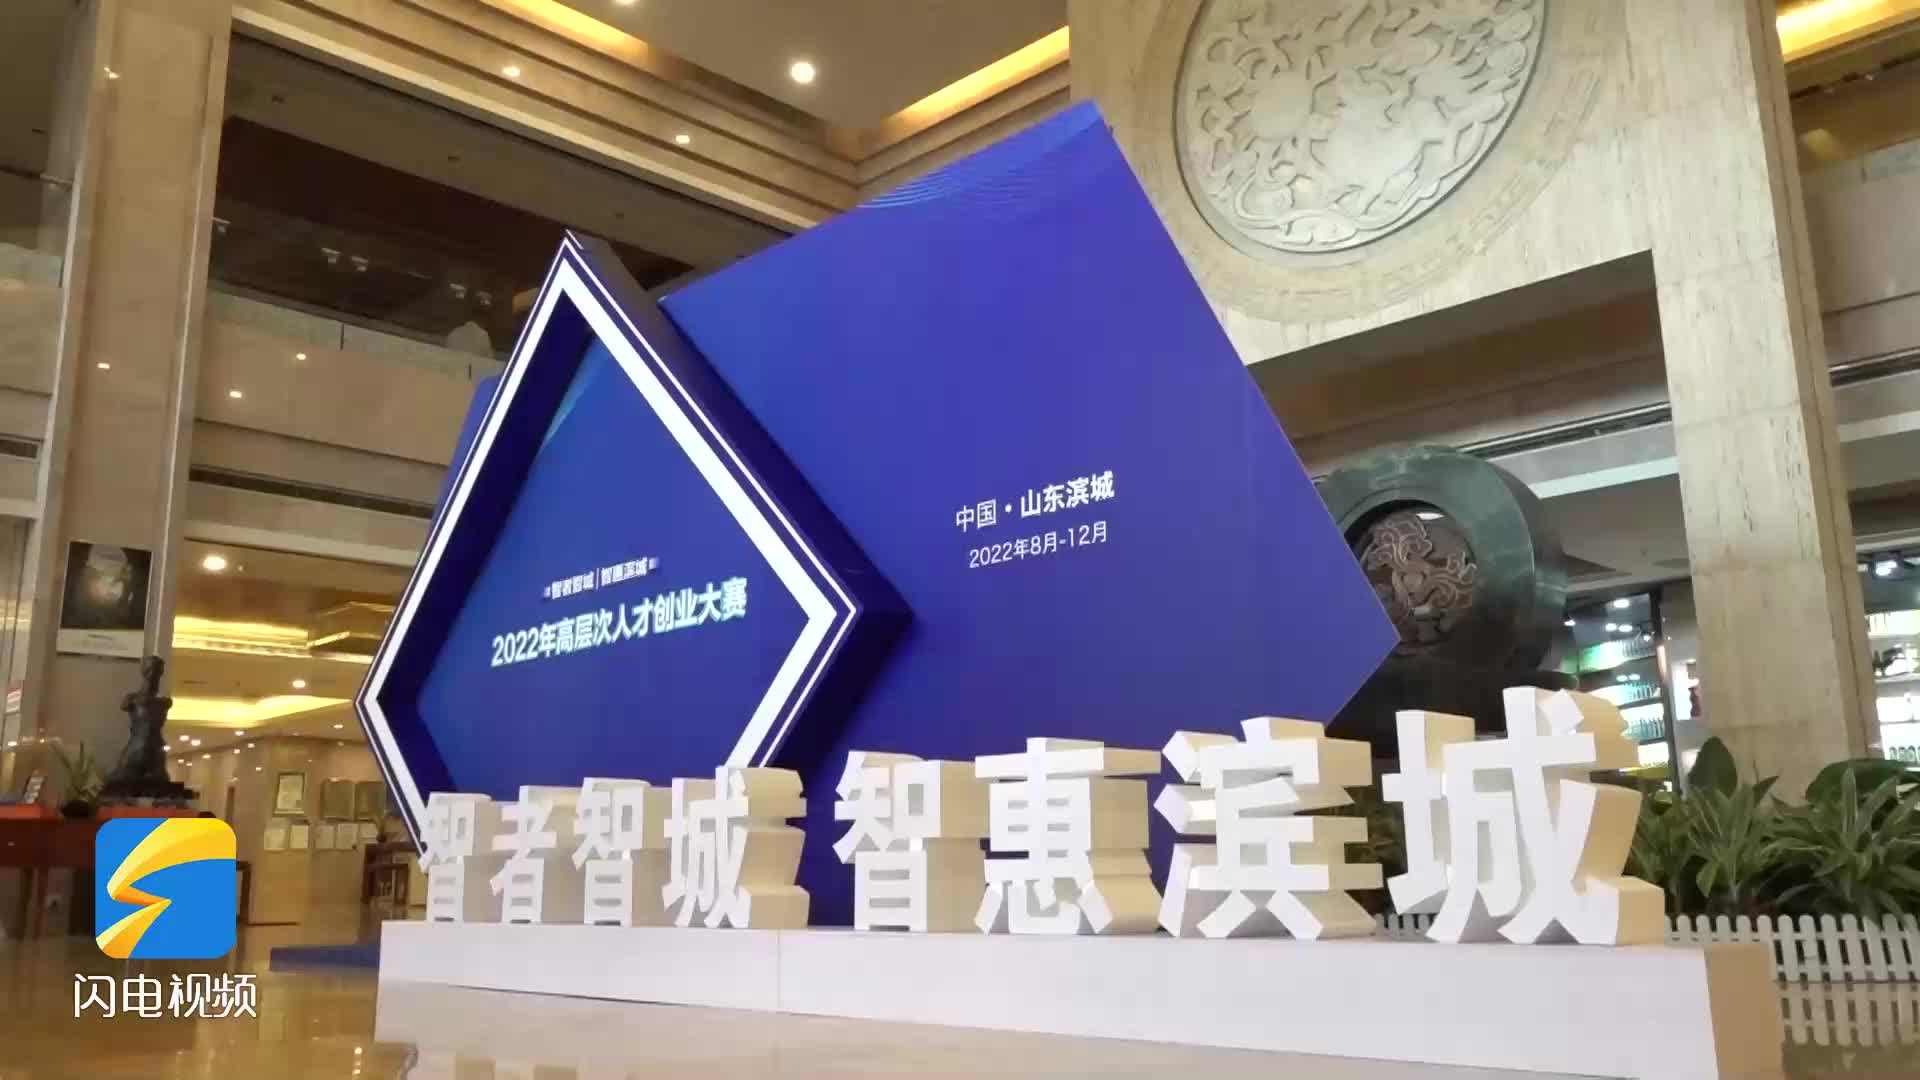 2022年“智者智城·智惠滨城”高层次人才创业大赛启动